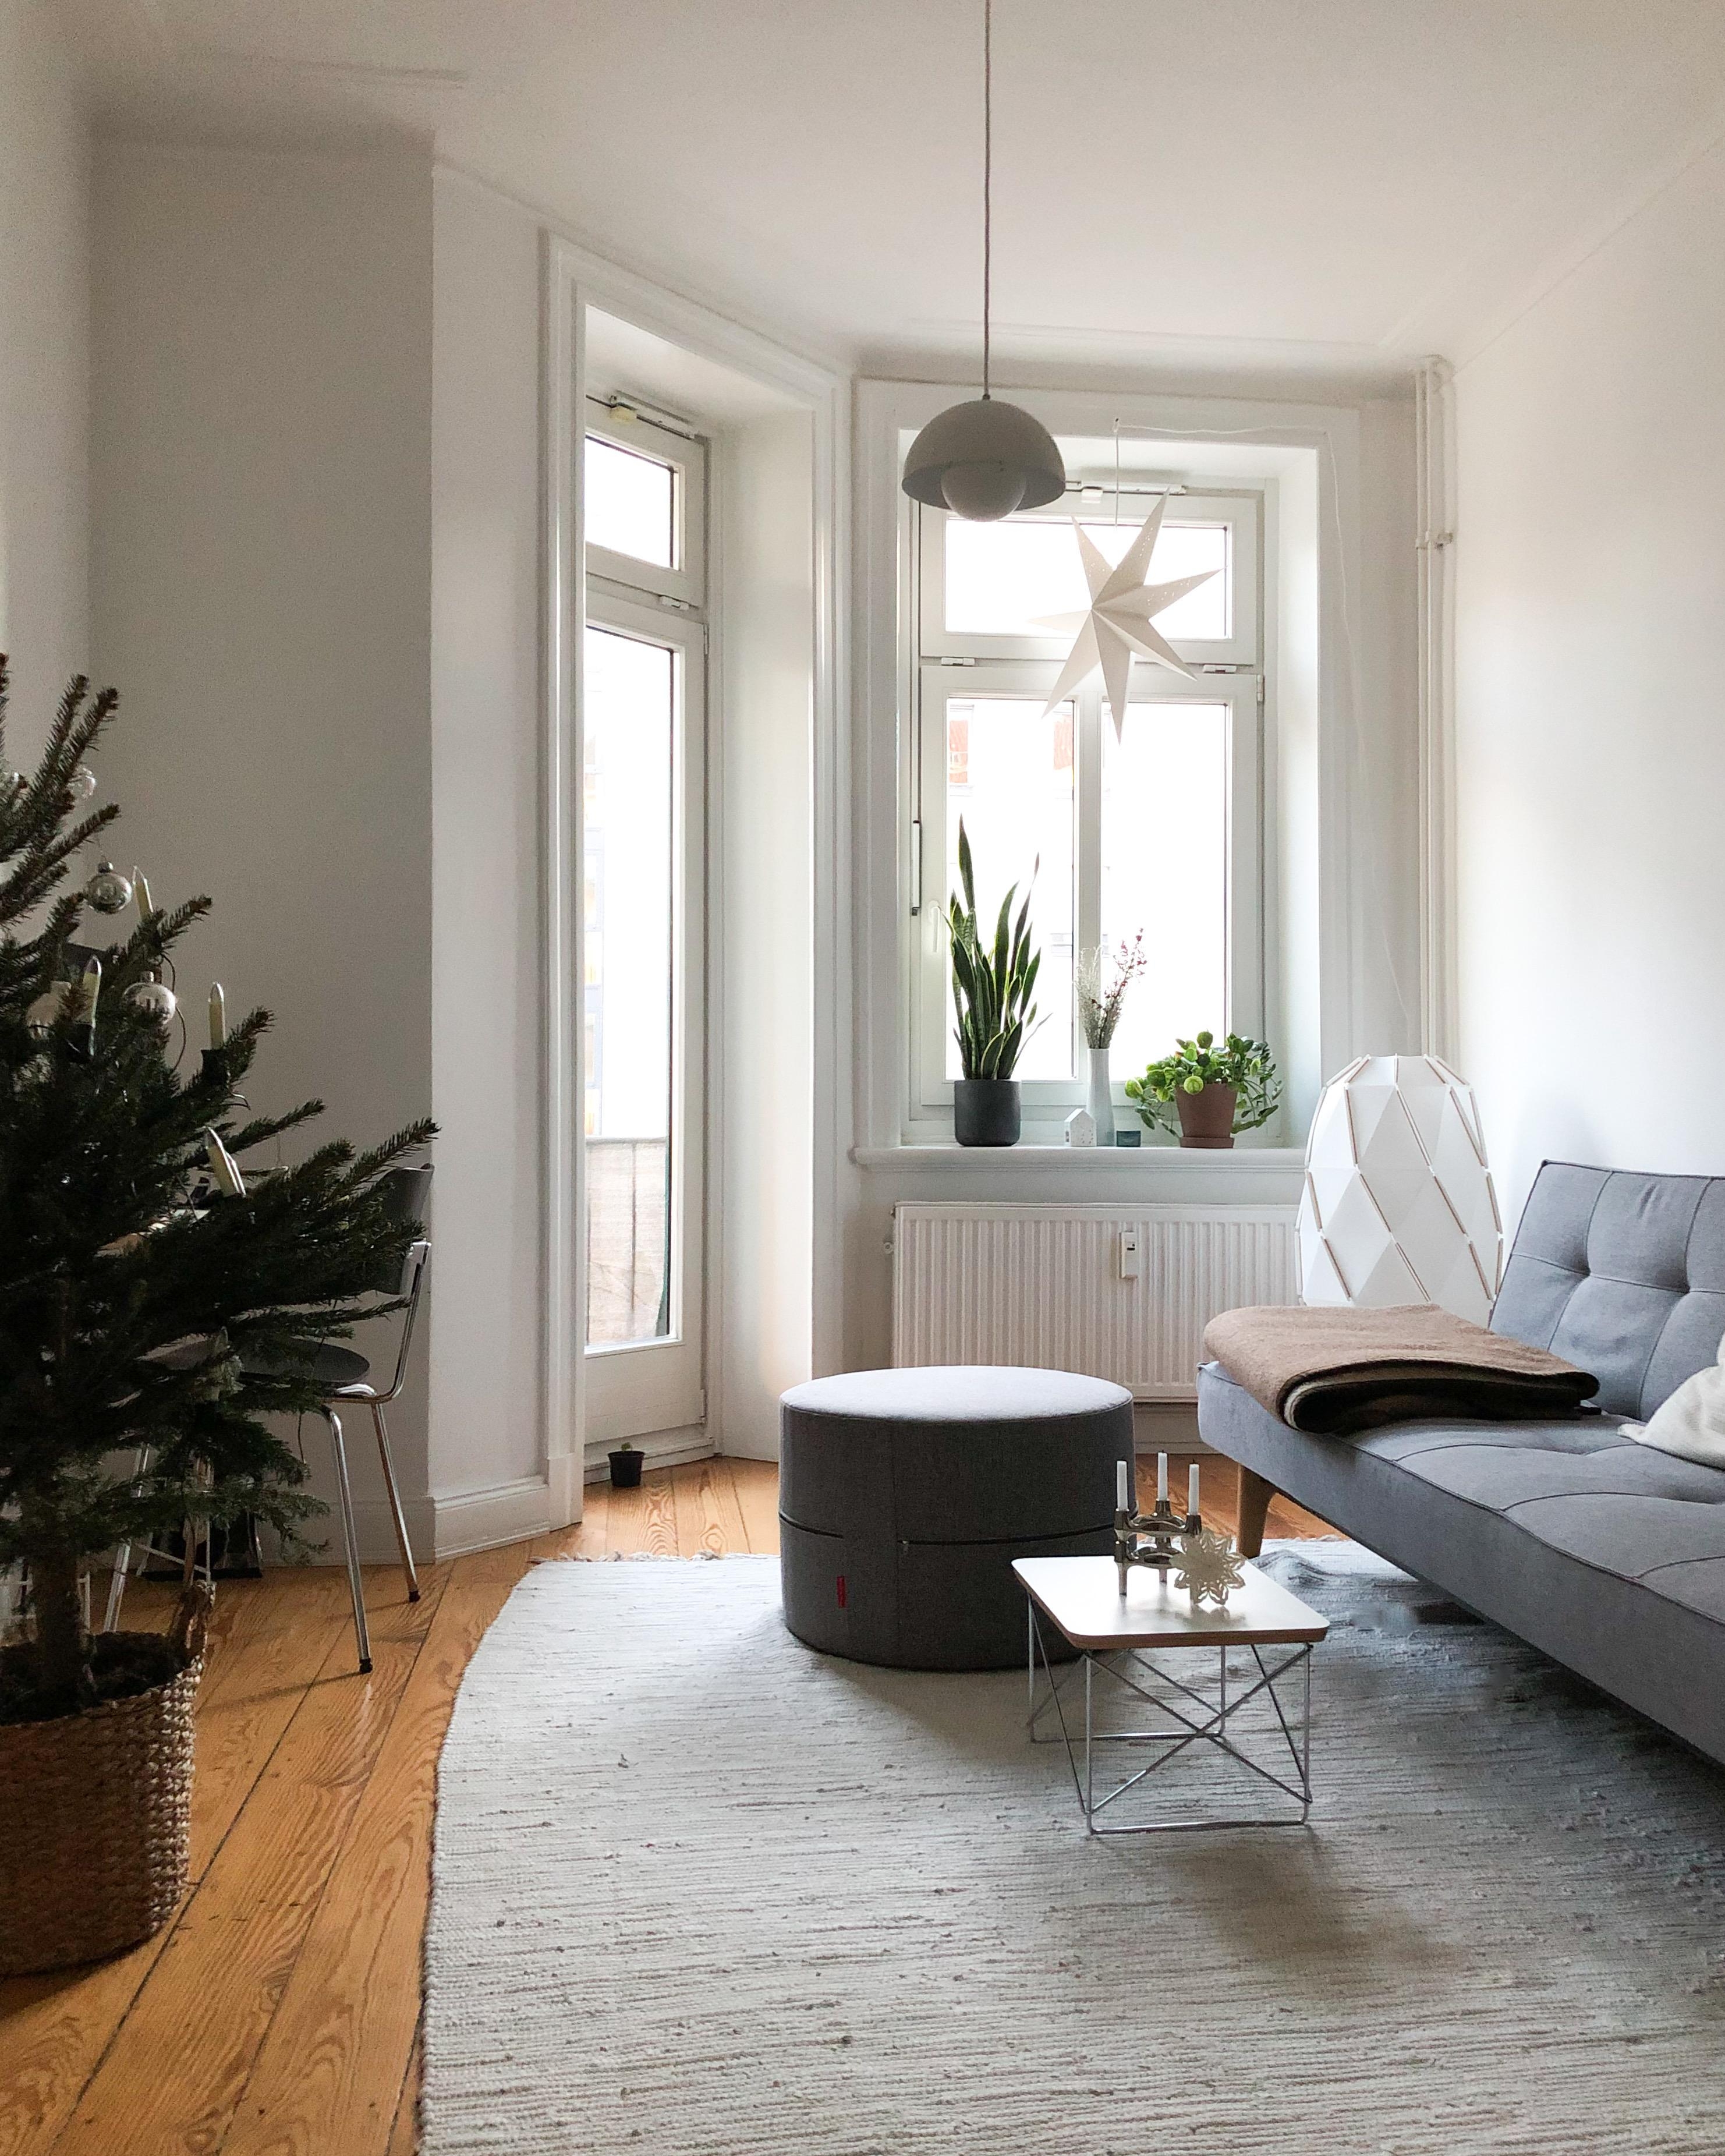 #altbauliebe #wohnzimmer #weihnachten #deko #einrichten #minimalismus